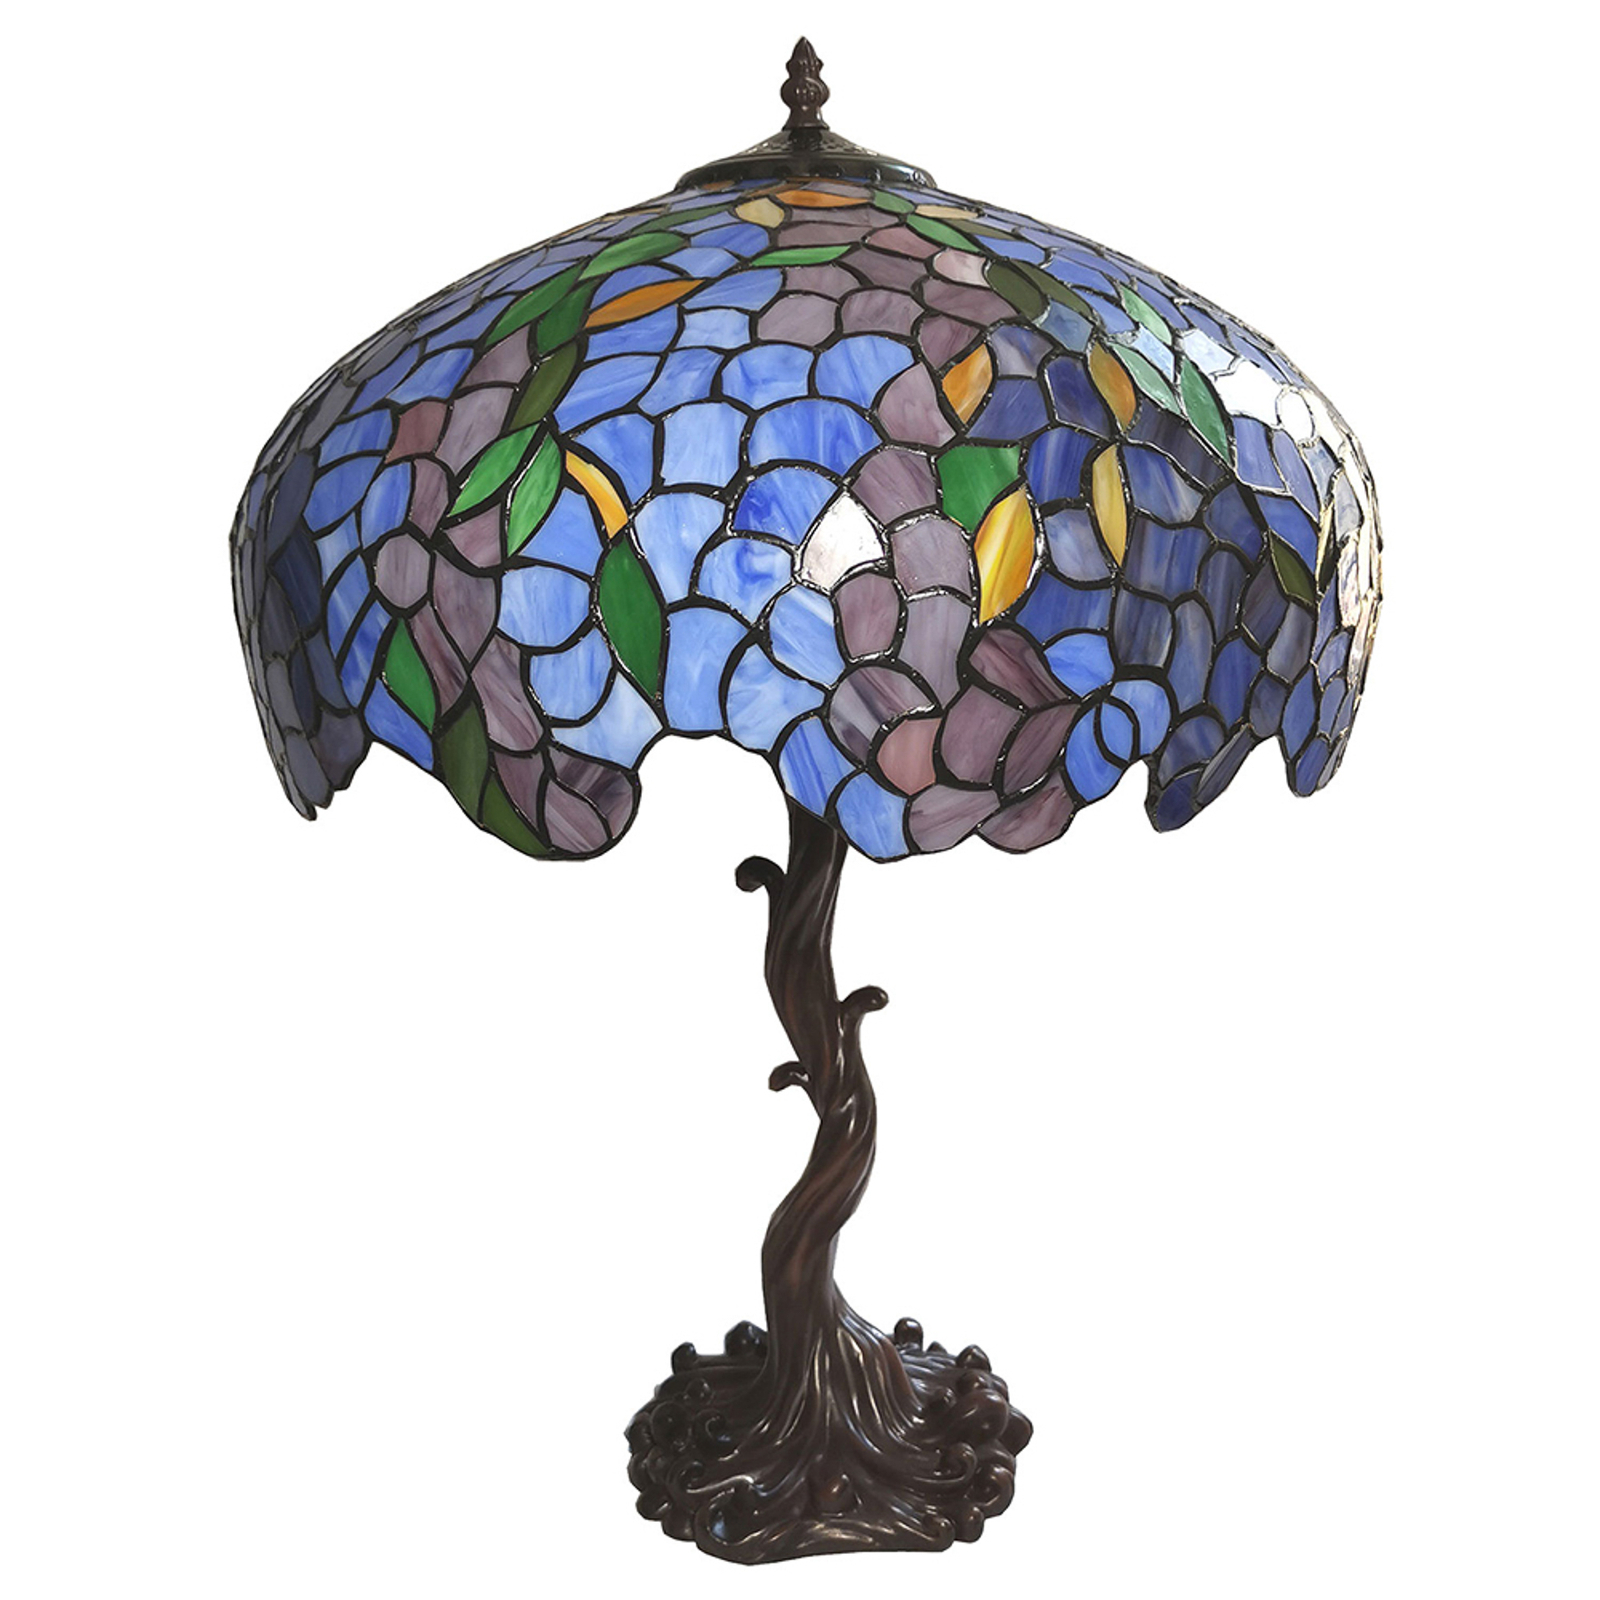 Tafellamp 5LL-6070 blauw/groen, Tiffany stijl